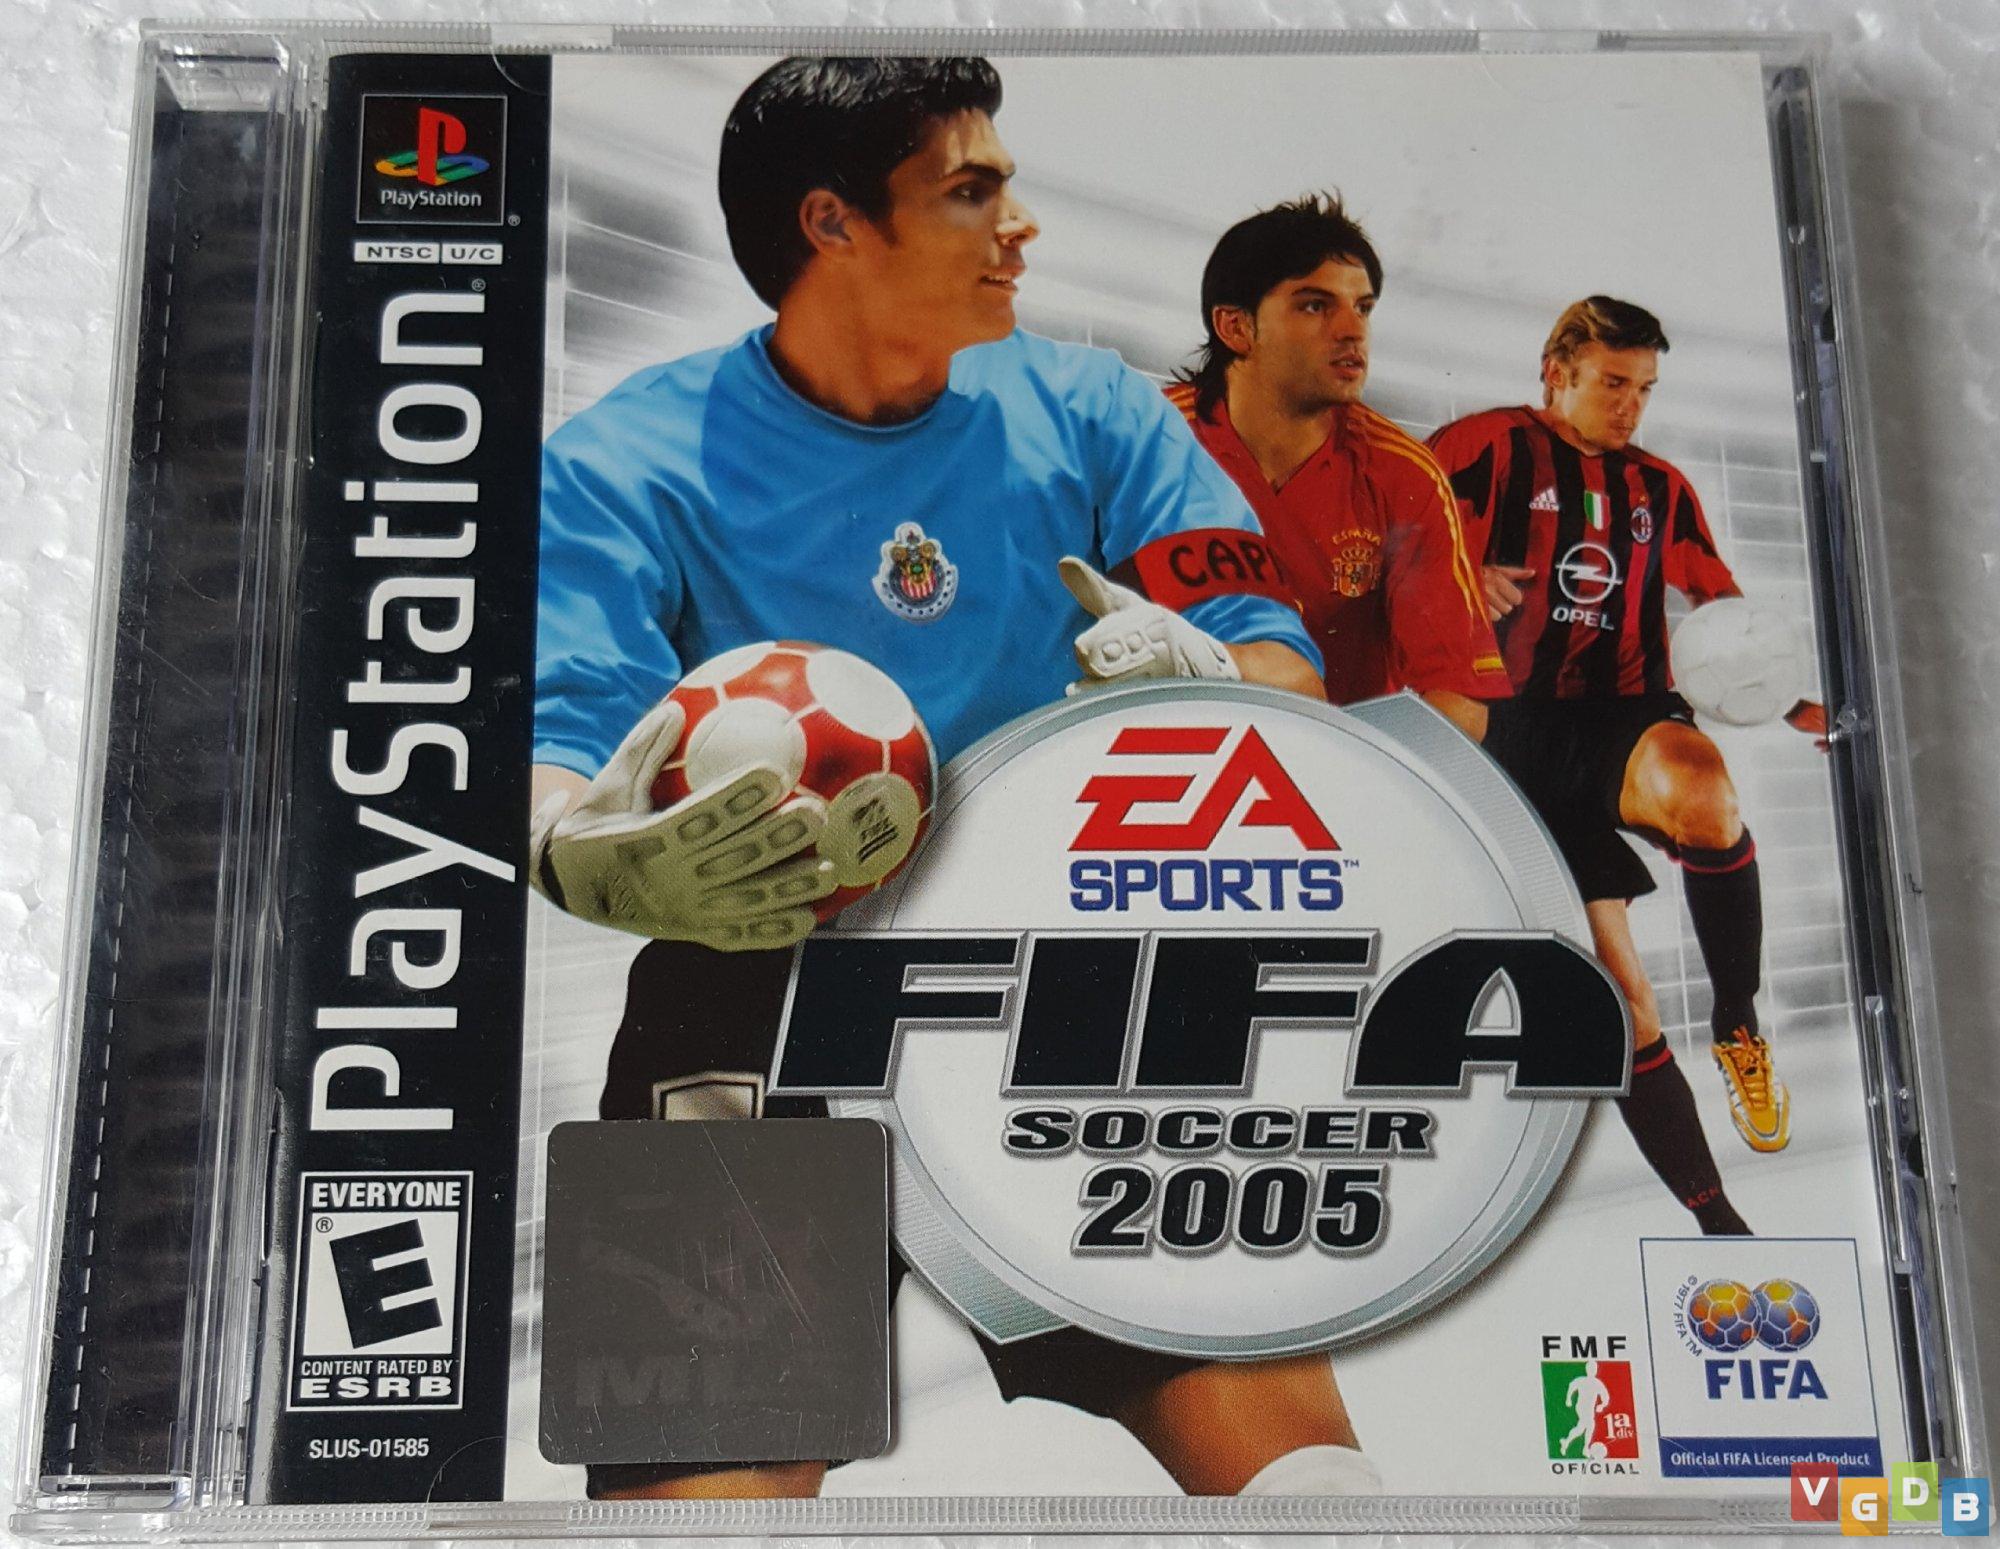 Preços baixos em FIFA Soccer 06 NTSC-U/C (EUA/Canadá) 2005 jogos de vídeo